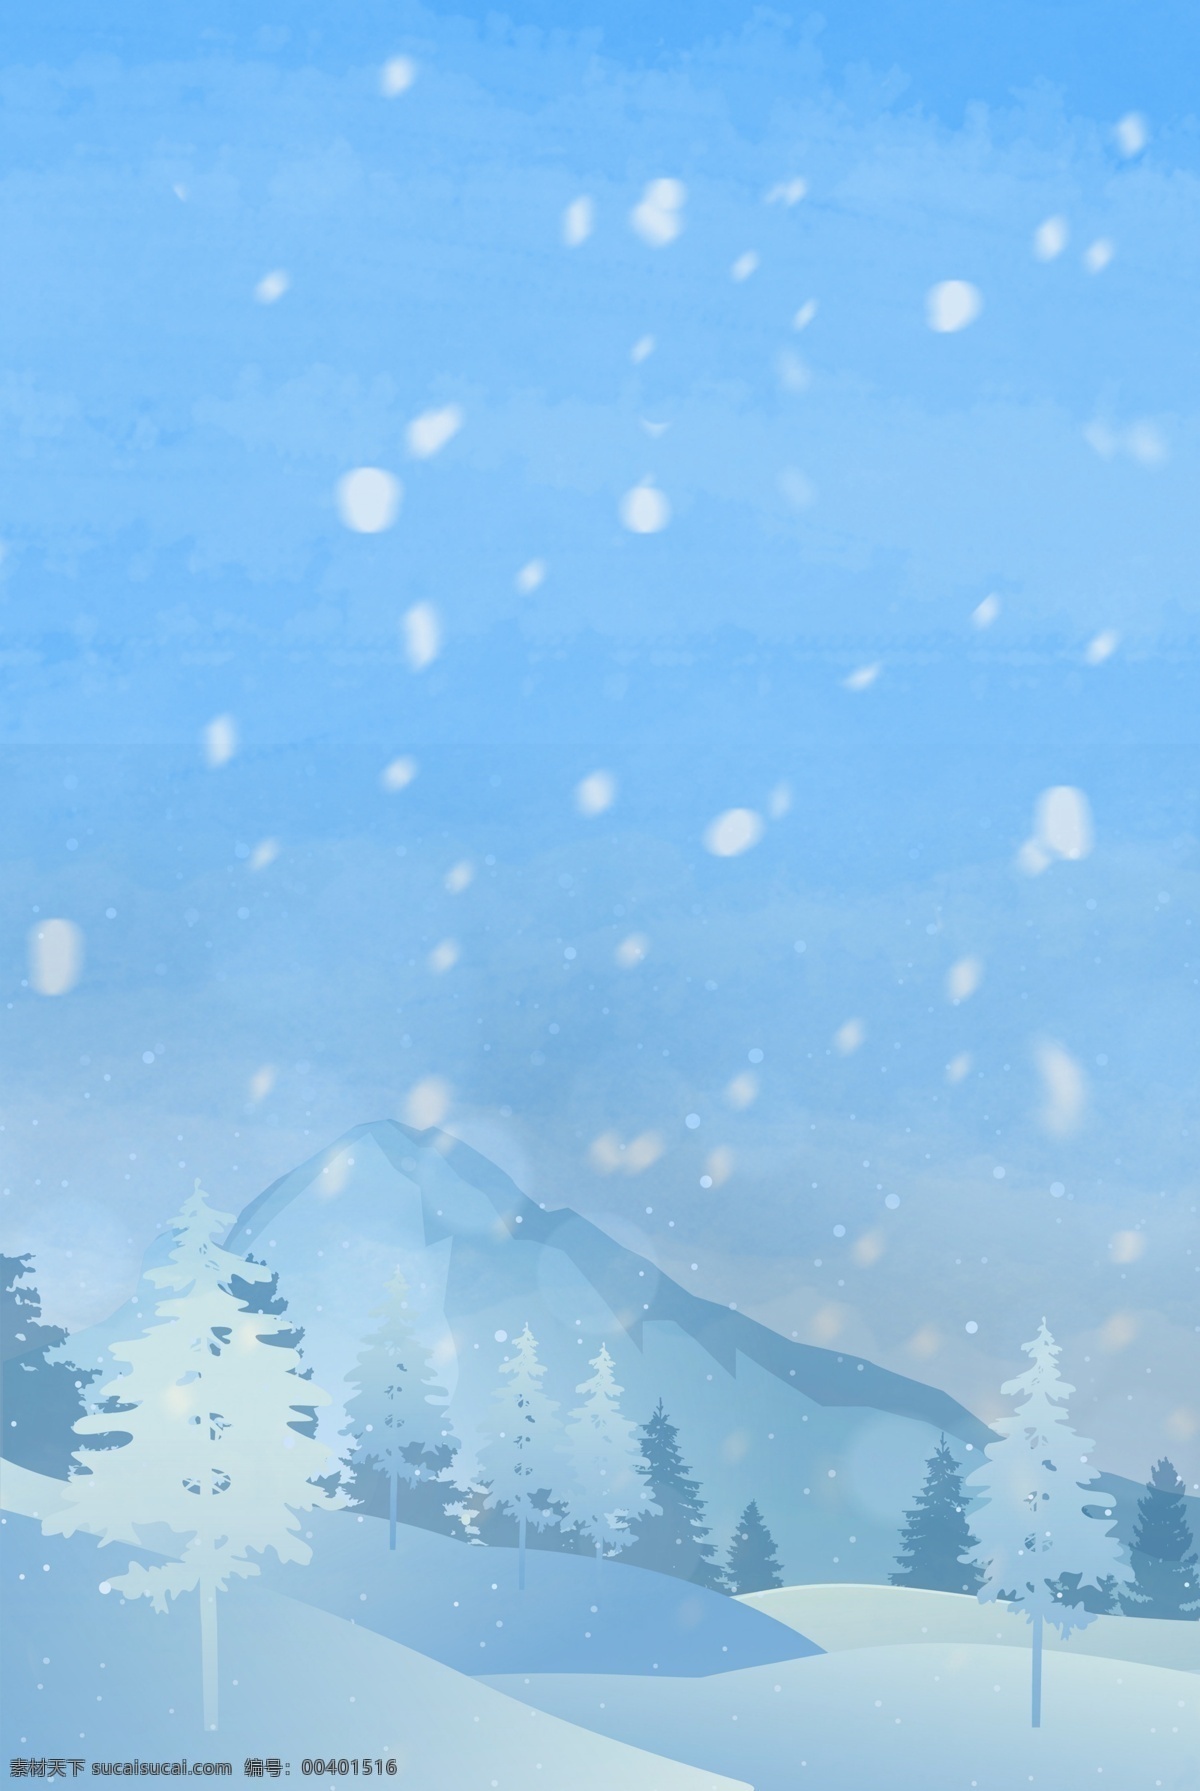 月 你好 冬天 分层 banner 十二月你好 清新 雪山 雪景 简约 大气 森林 创意合成